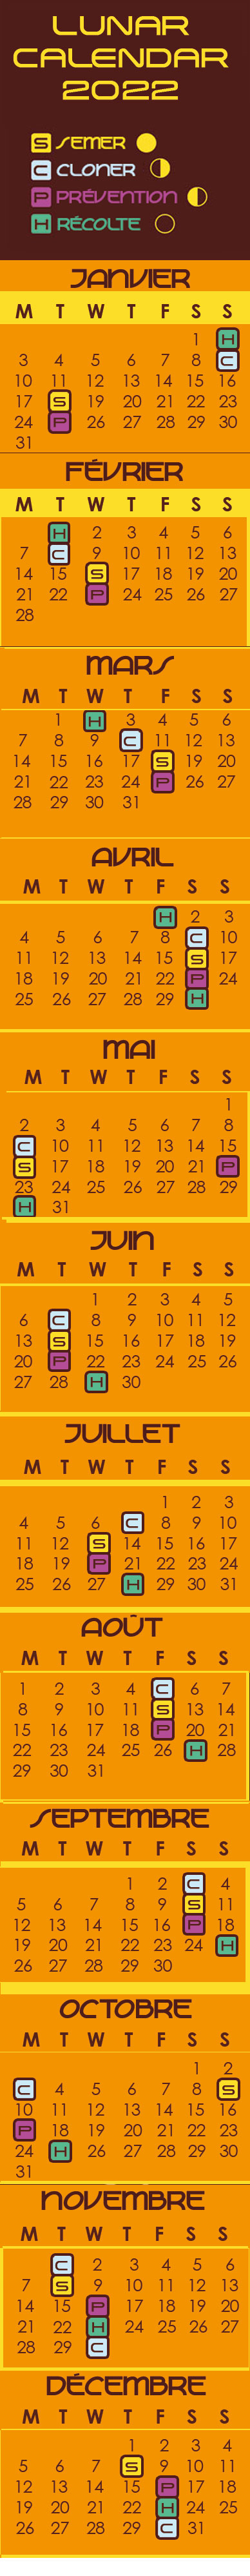 Lunar calendar